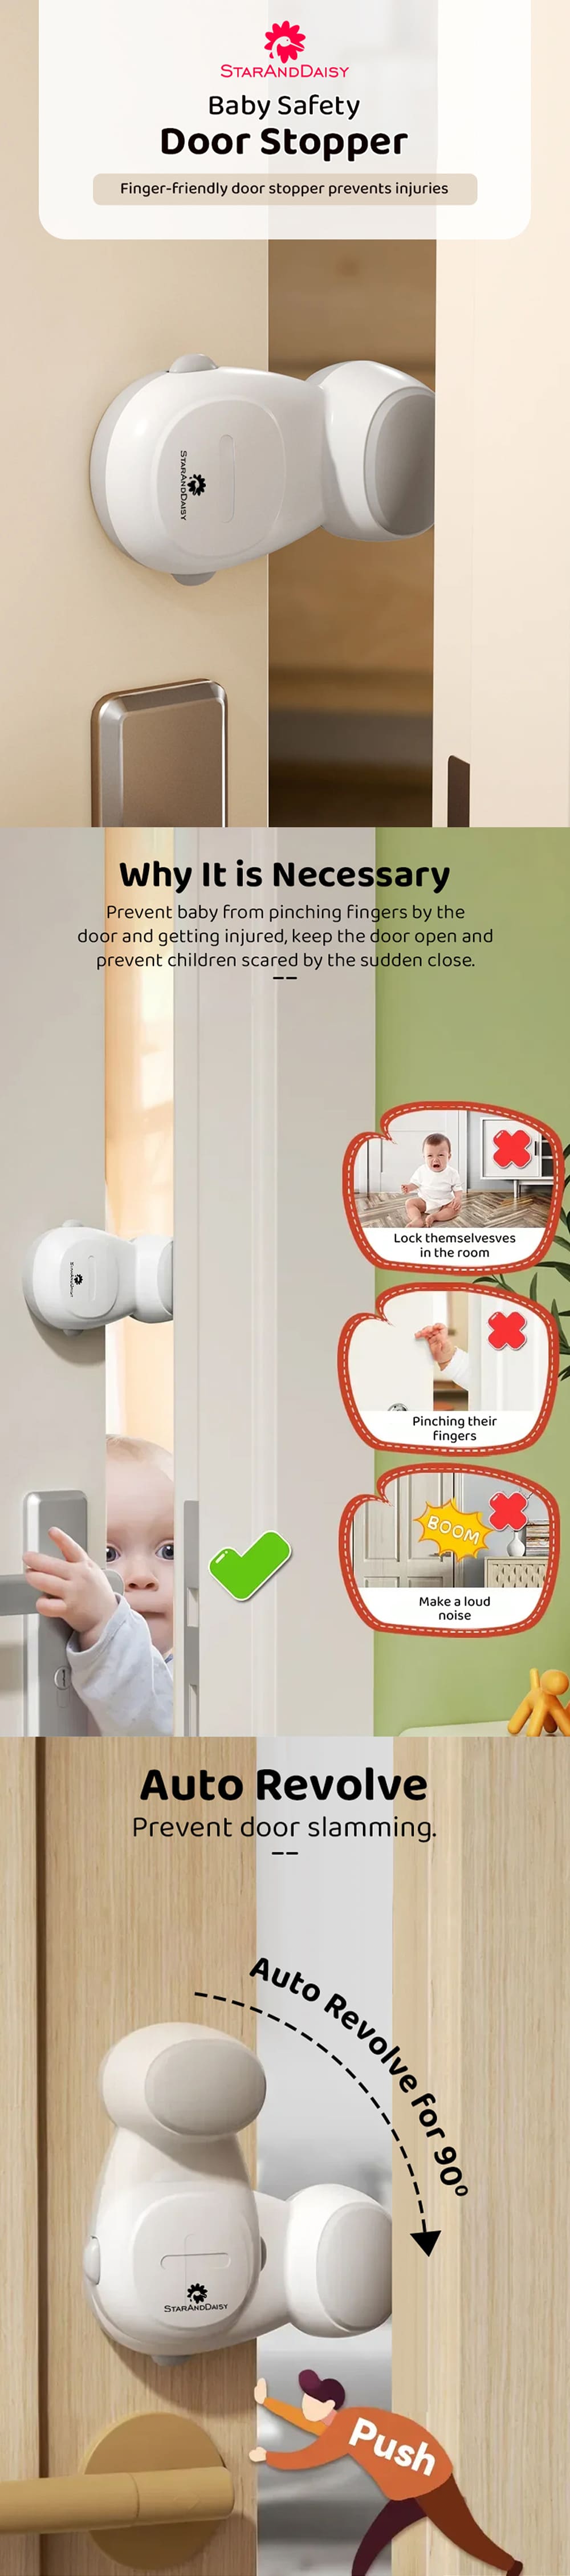 Door Stopper for Babies